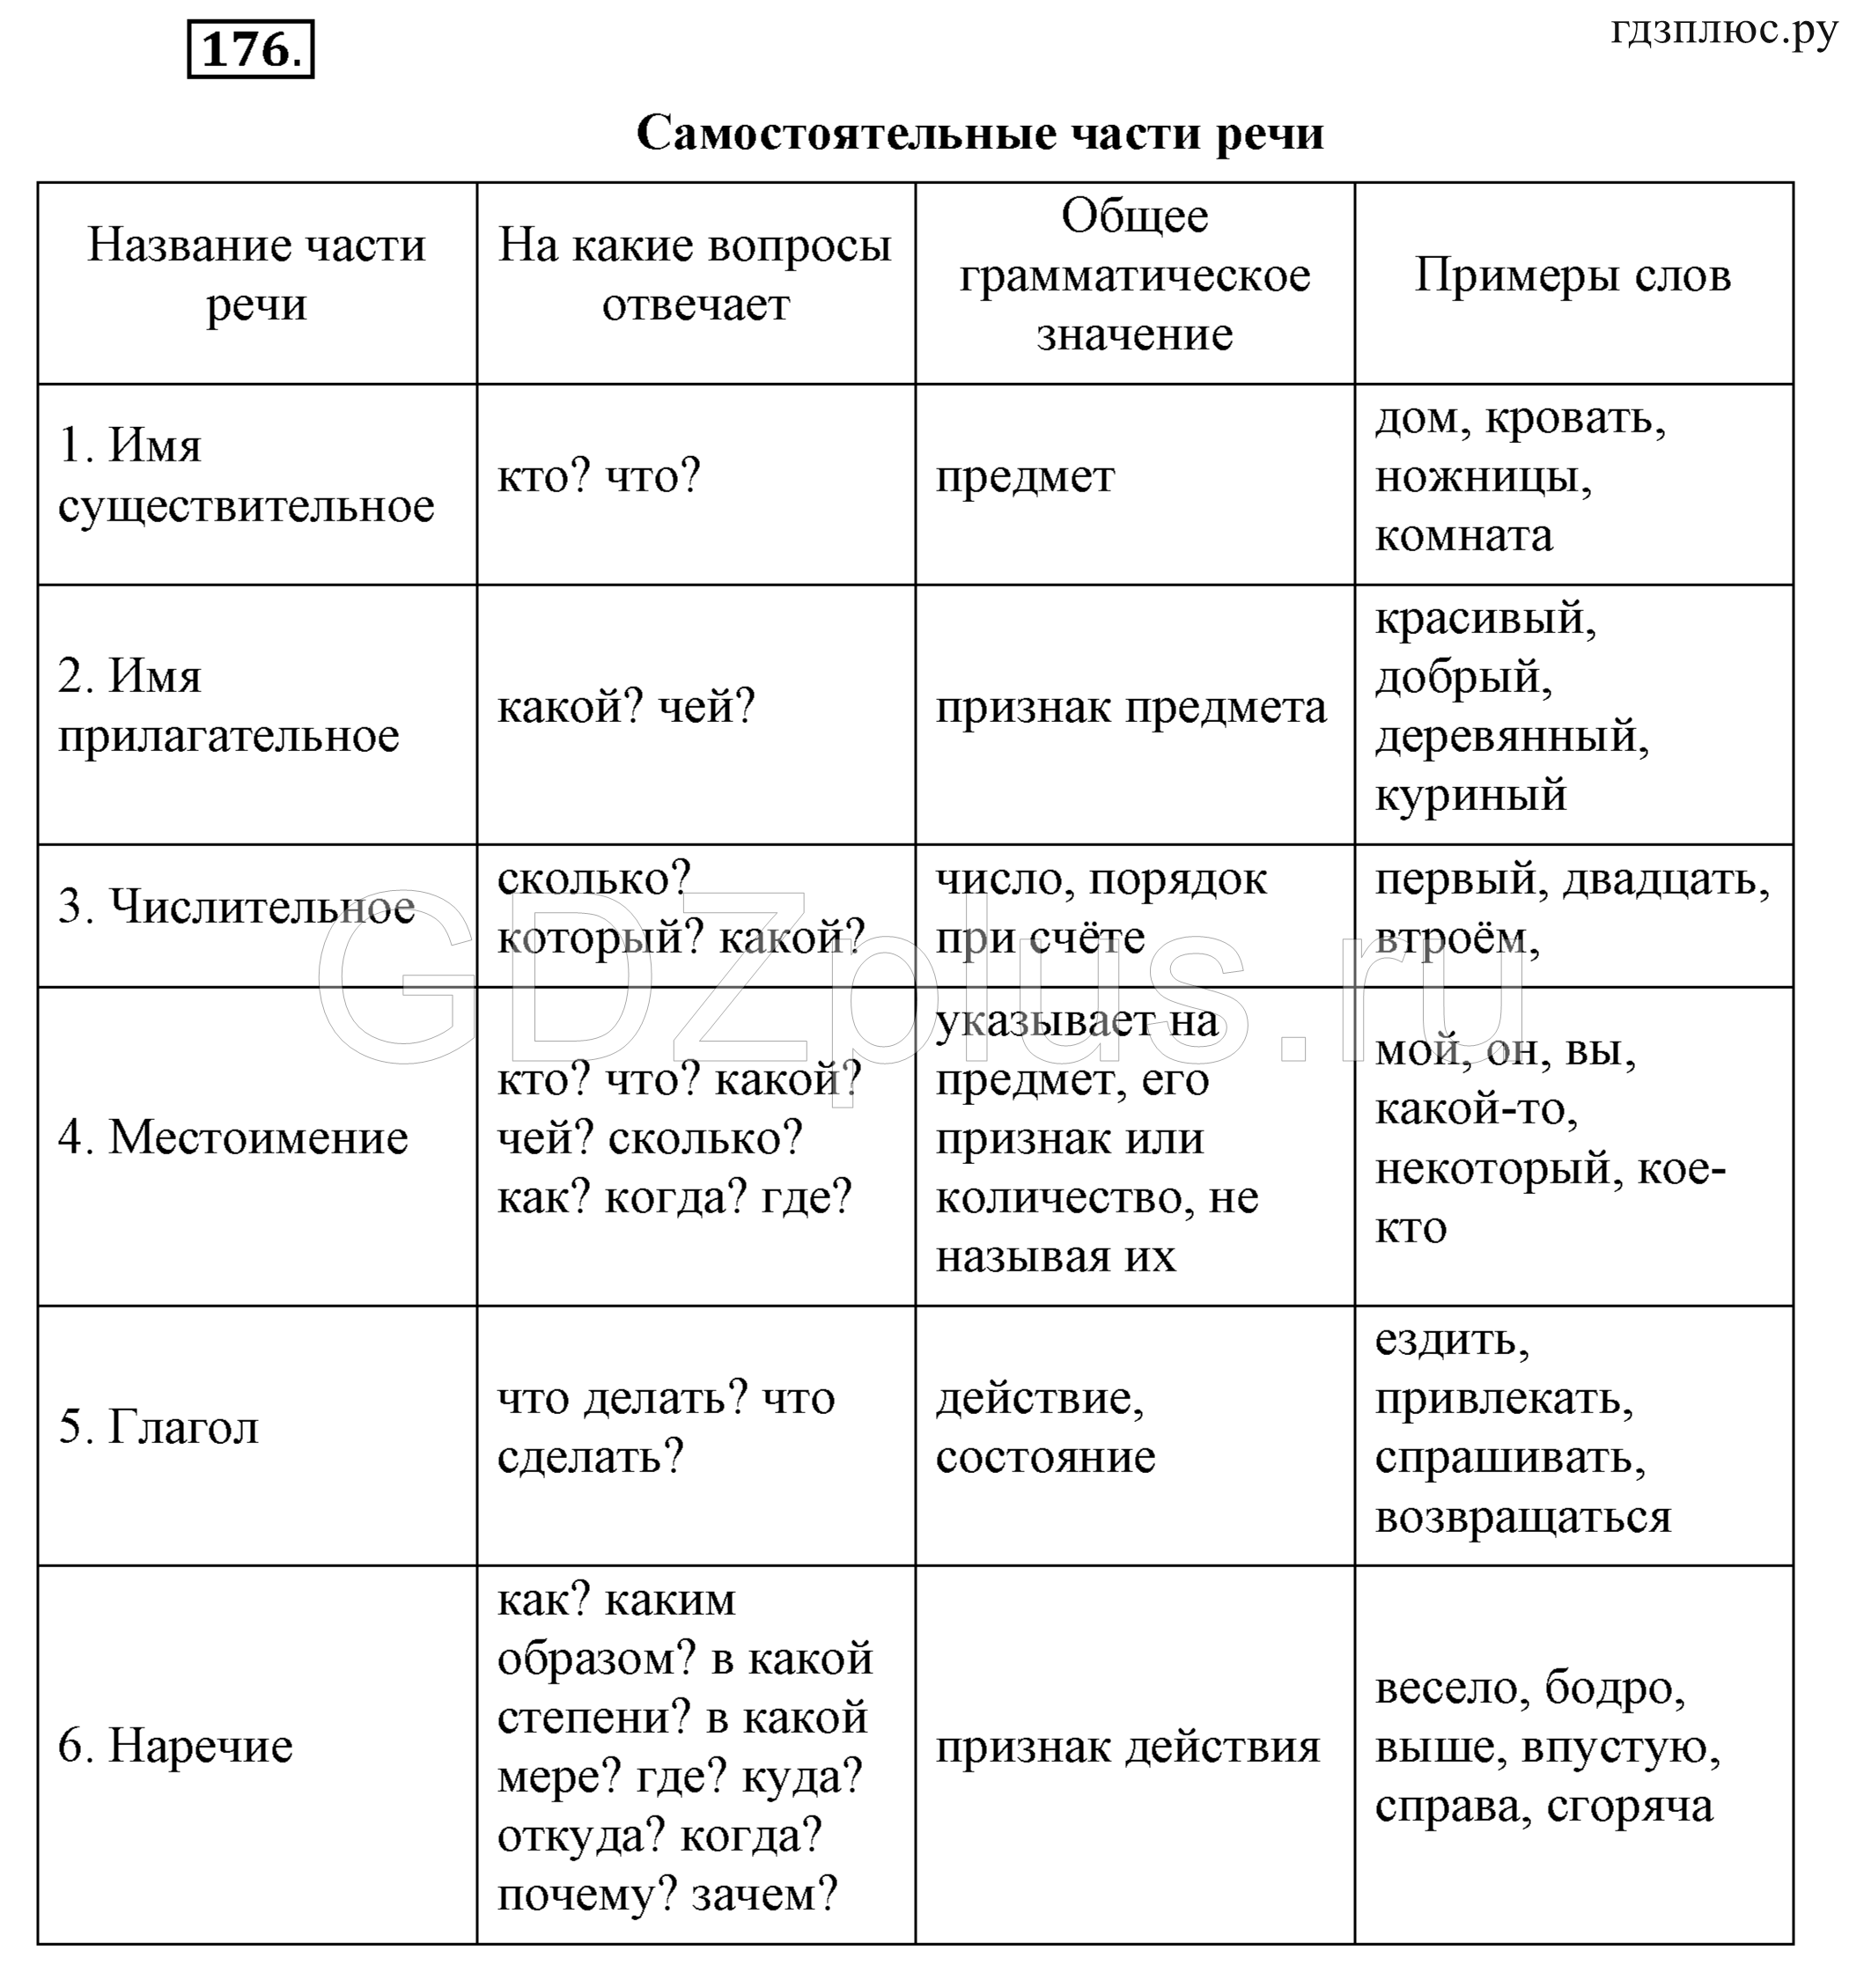 Все части речи в русском языке 5